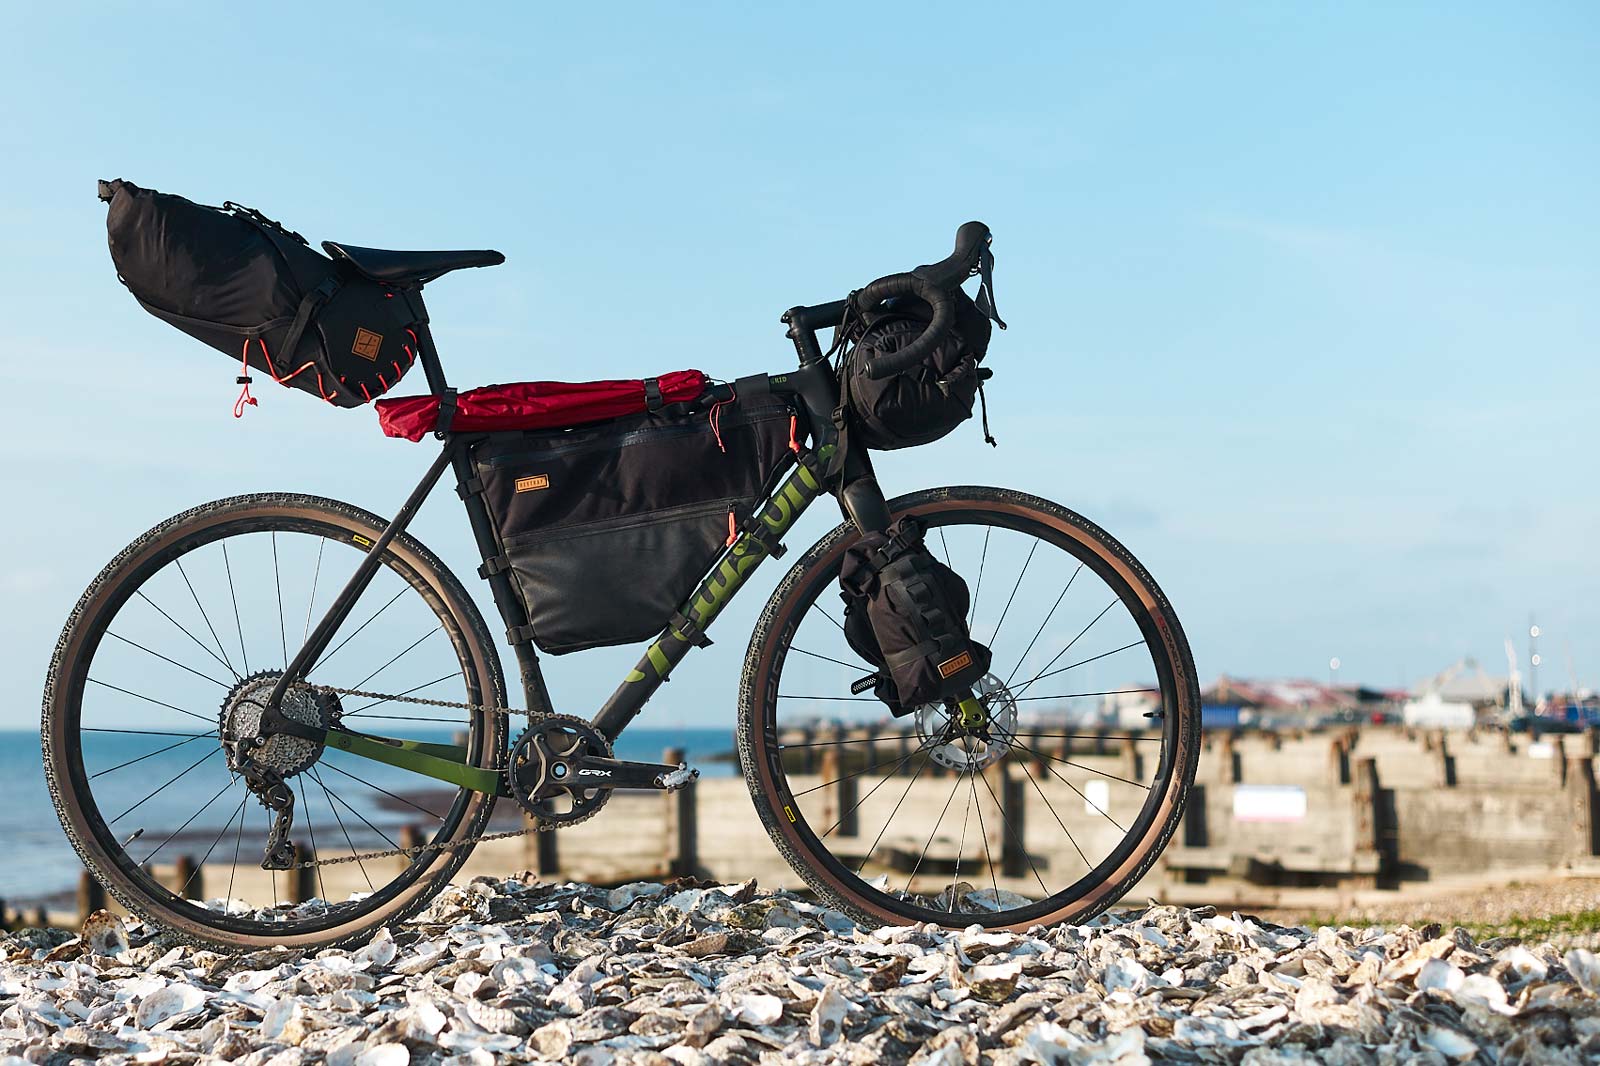 restrap full frame bag modfeled on gravel bike on beach